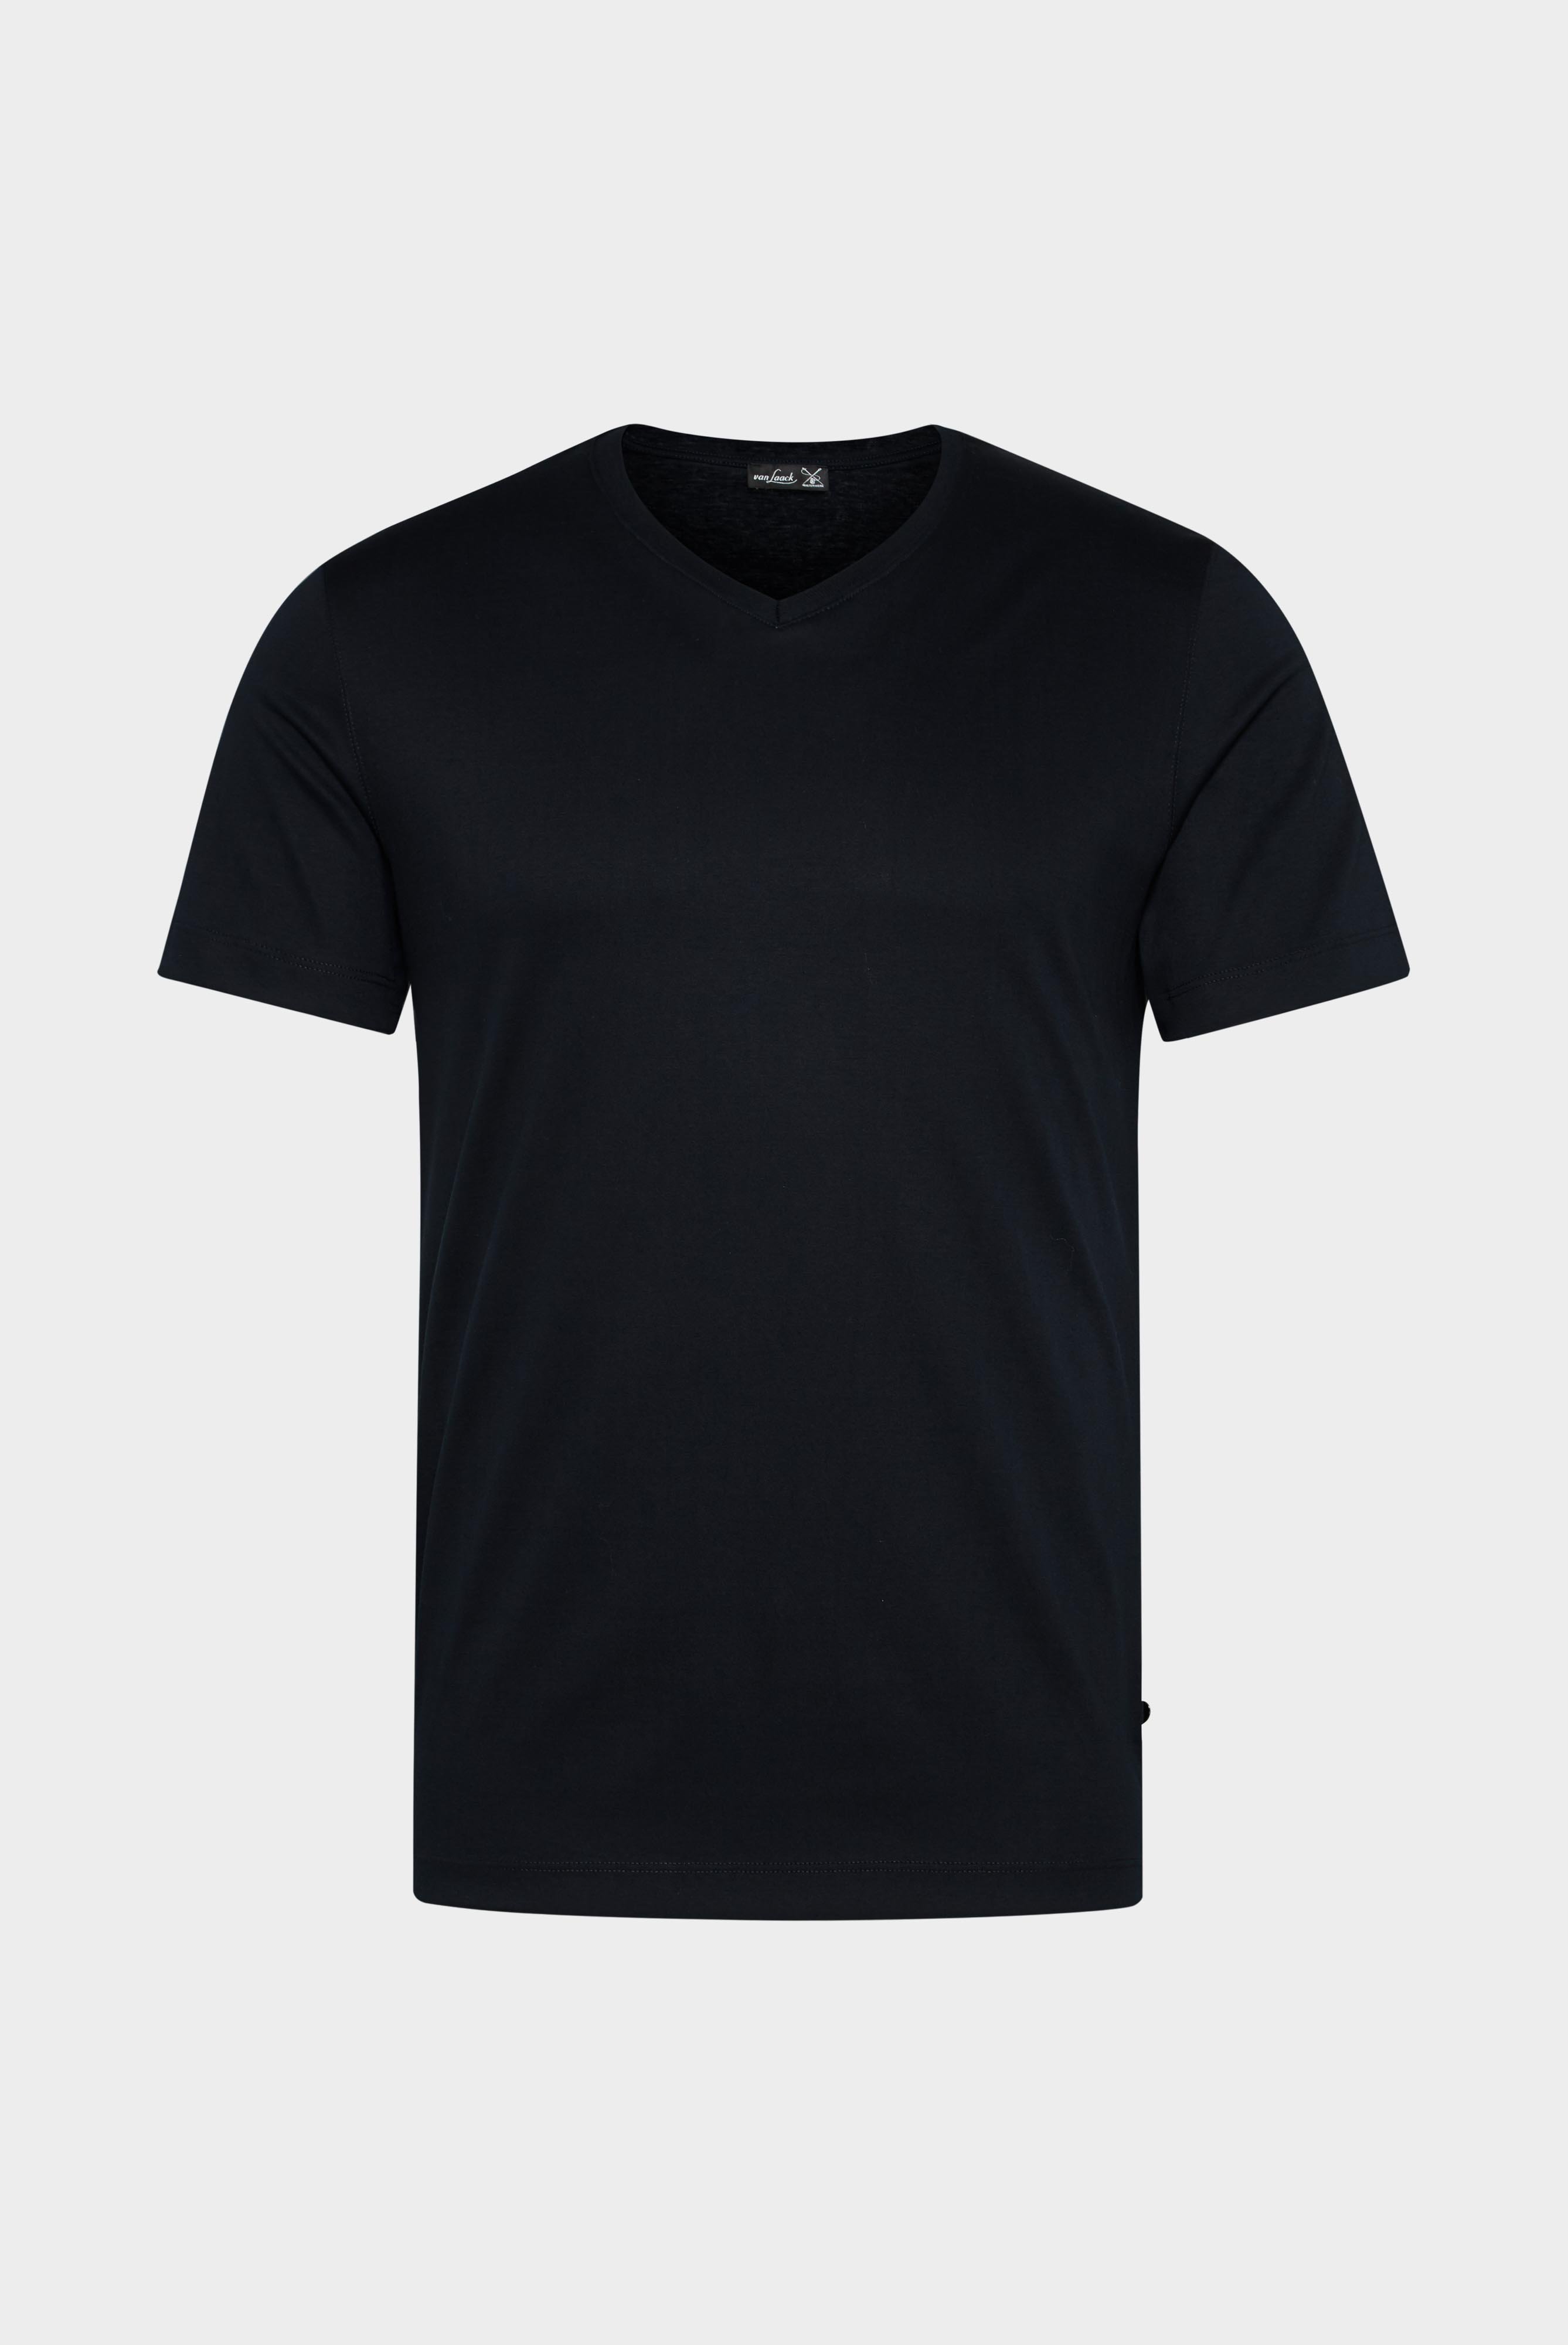 T-Shirts+V-Ausschnitt Jersey T-Shirt Slim Fit+20.1715.UX.180031.790.S